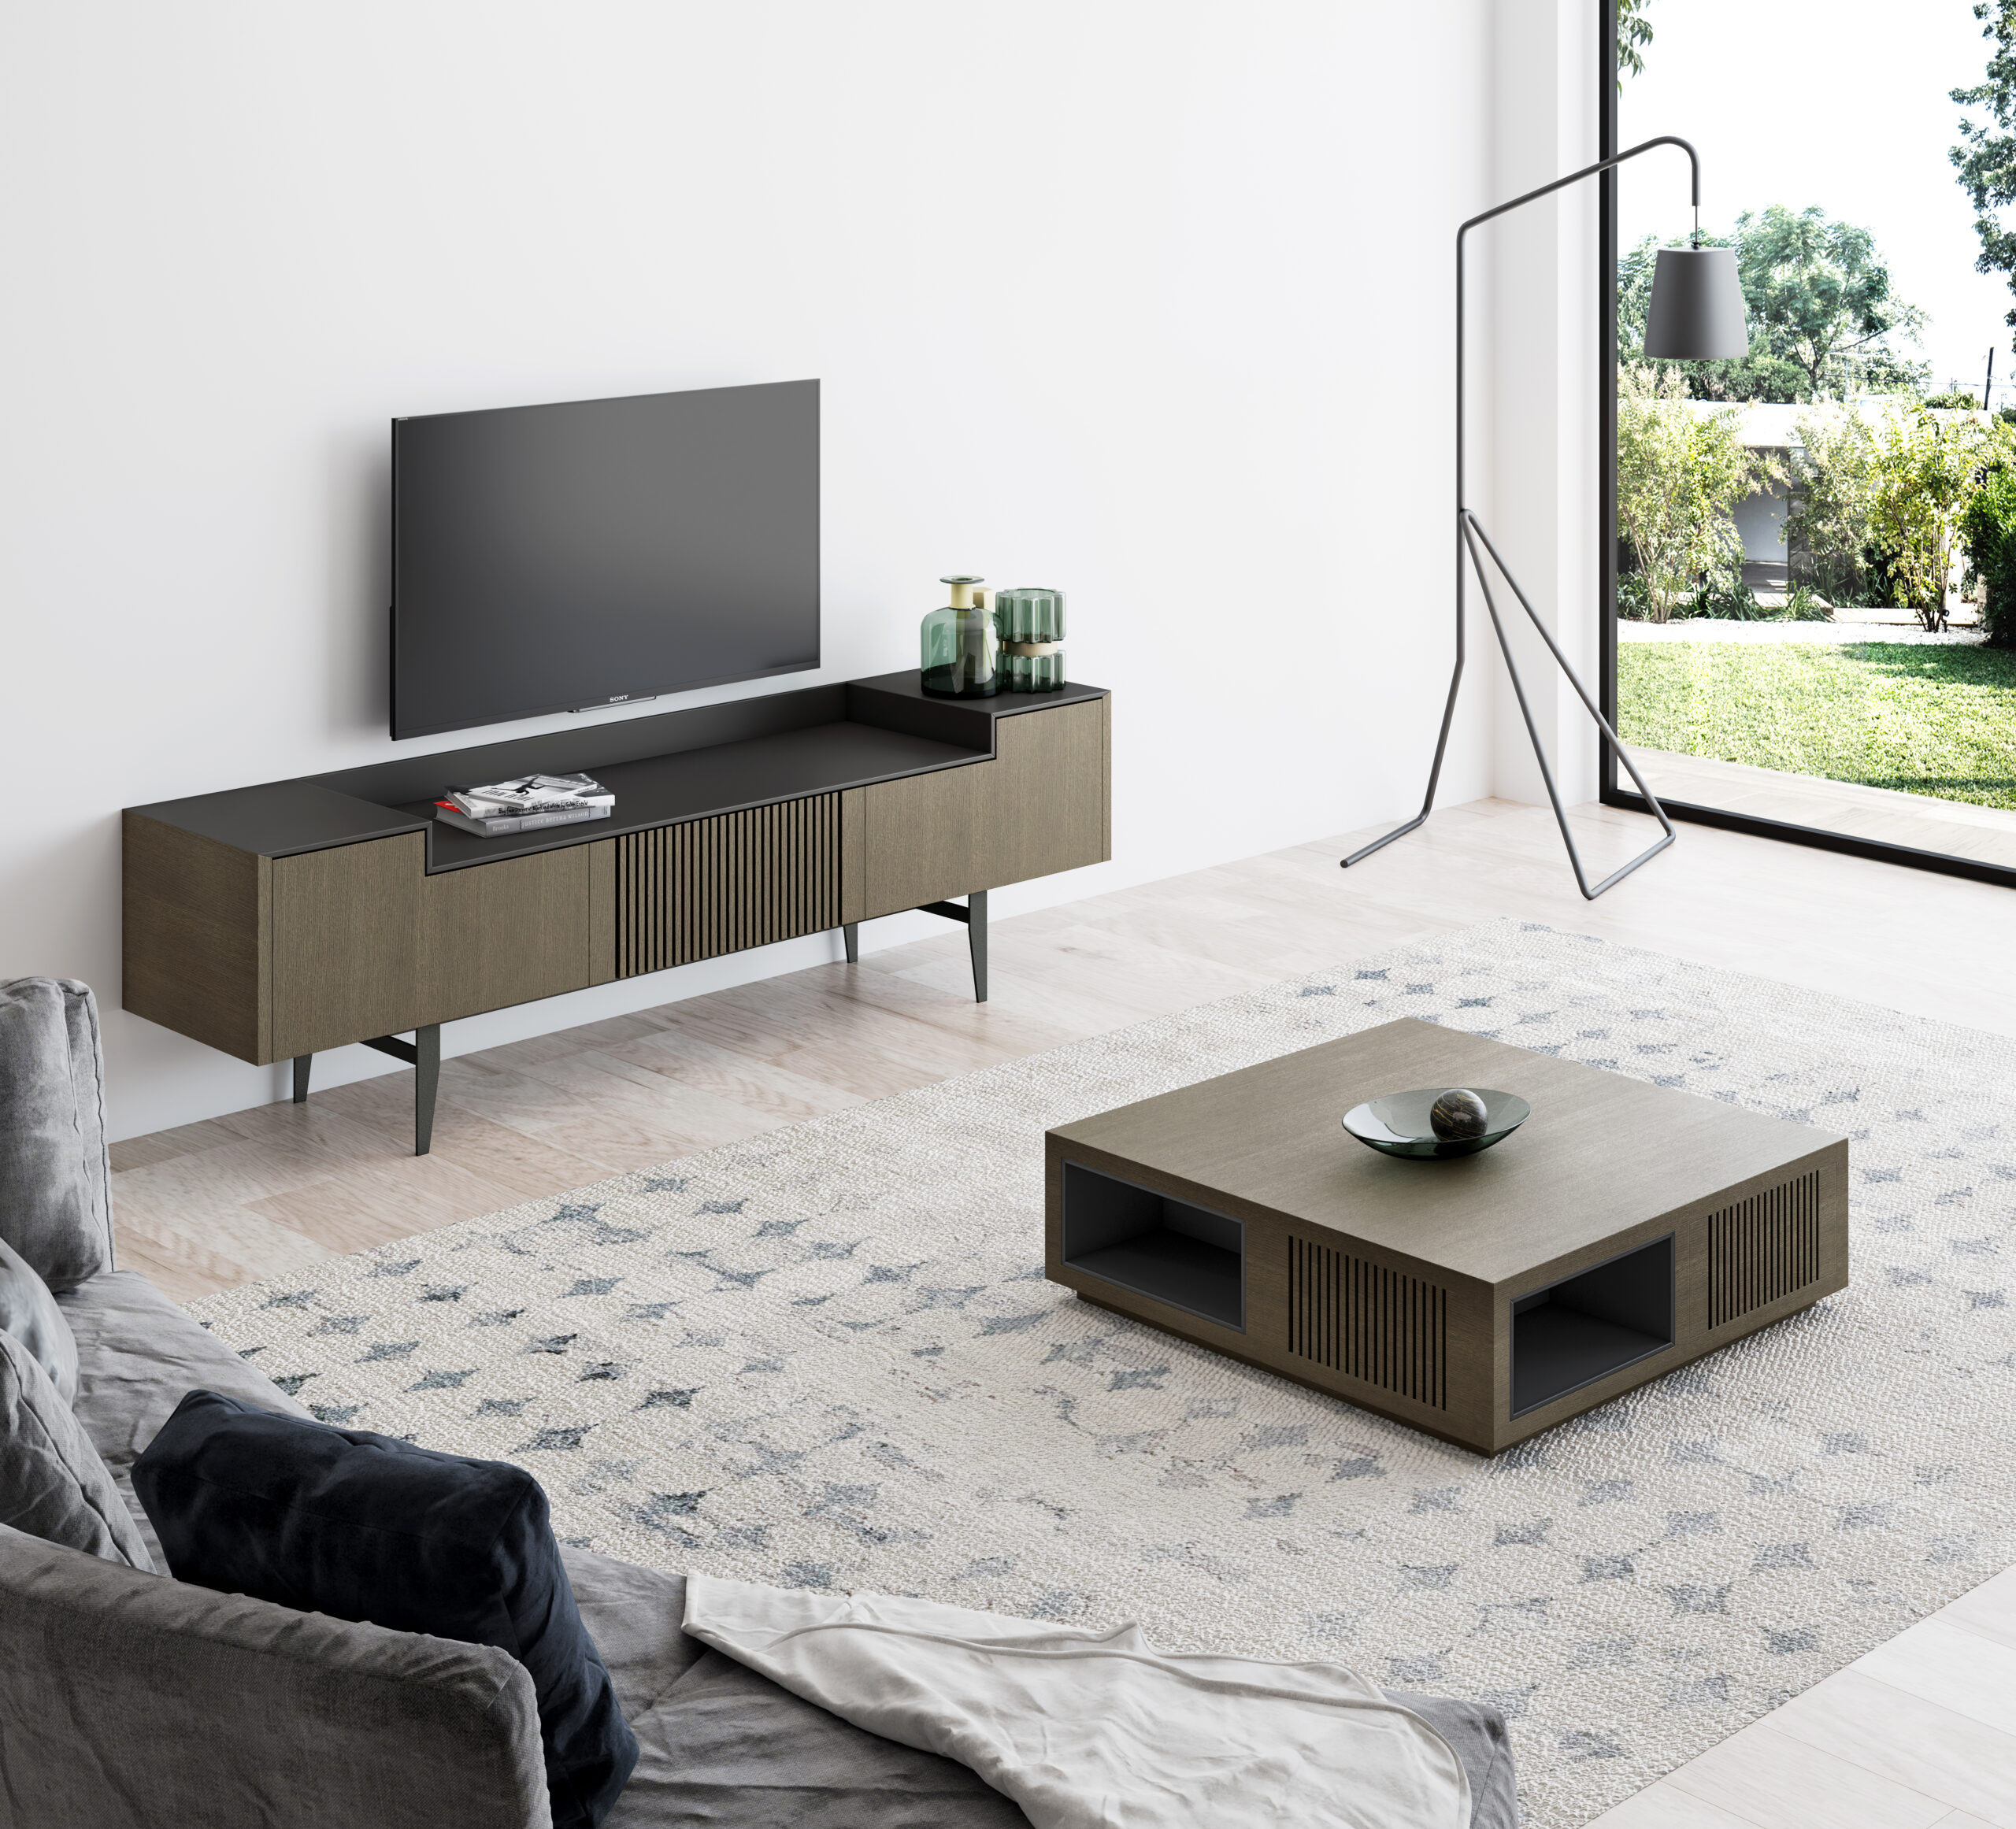 Mueble de TV bajo y estrecho con pata metálica -Palisandro Interiorismo